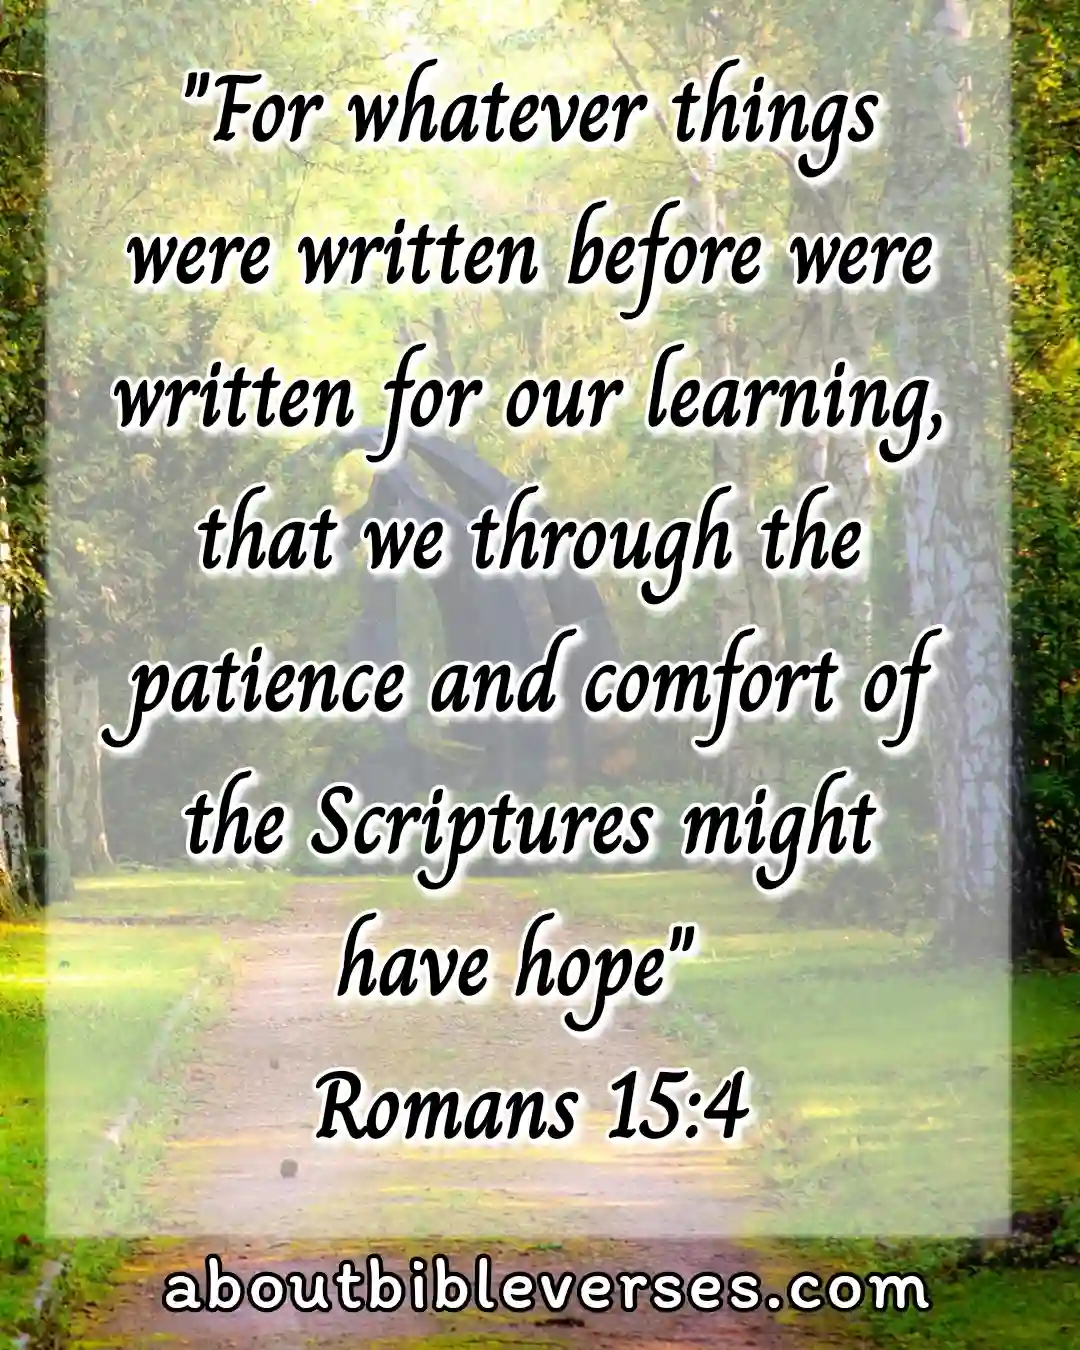 [Best] Más de 45 versículos bíblicos sobre la esperanza en tiempos difíciles